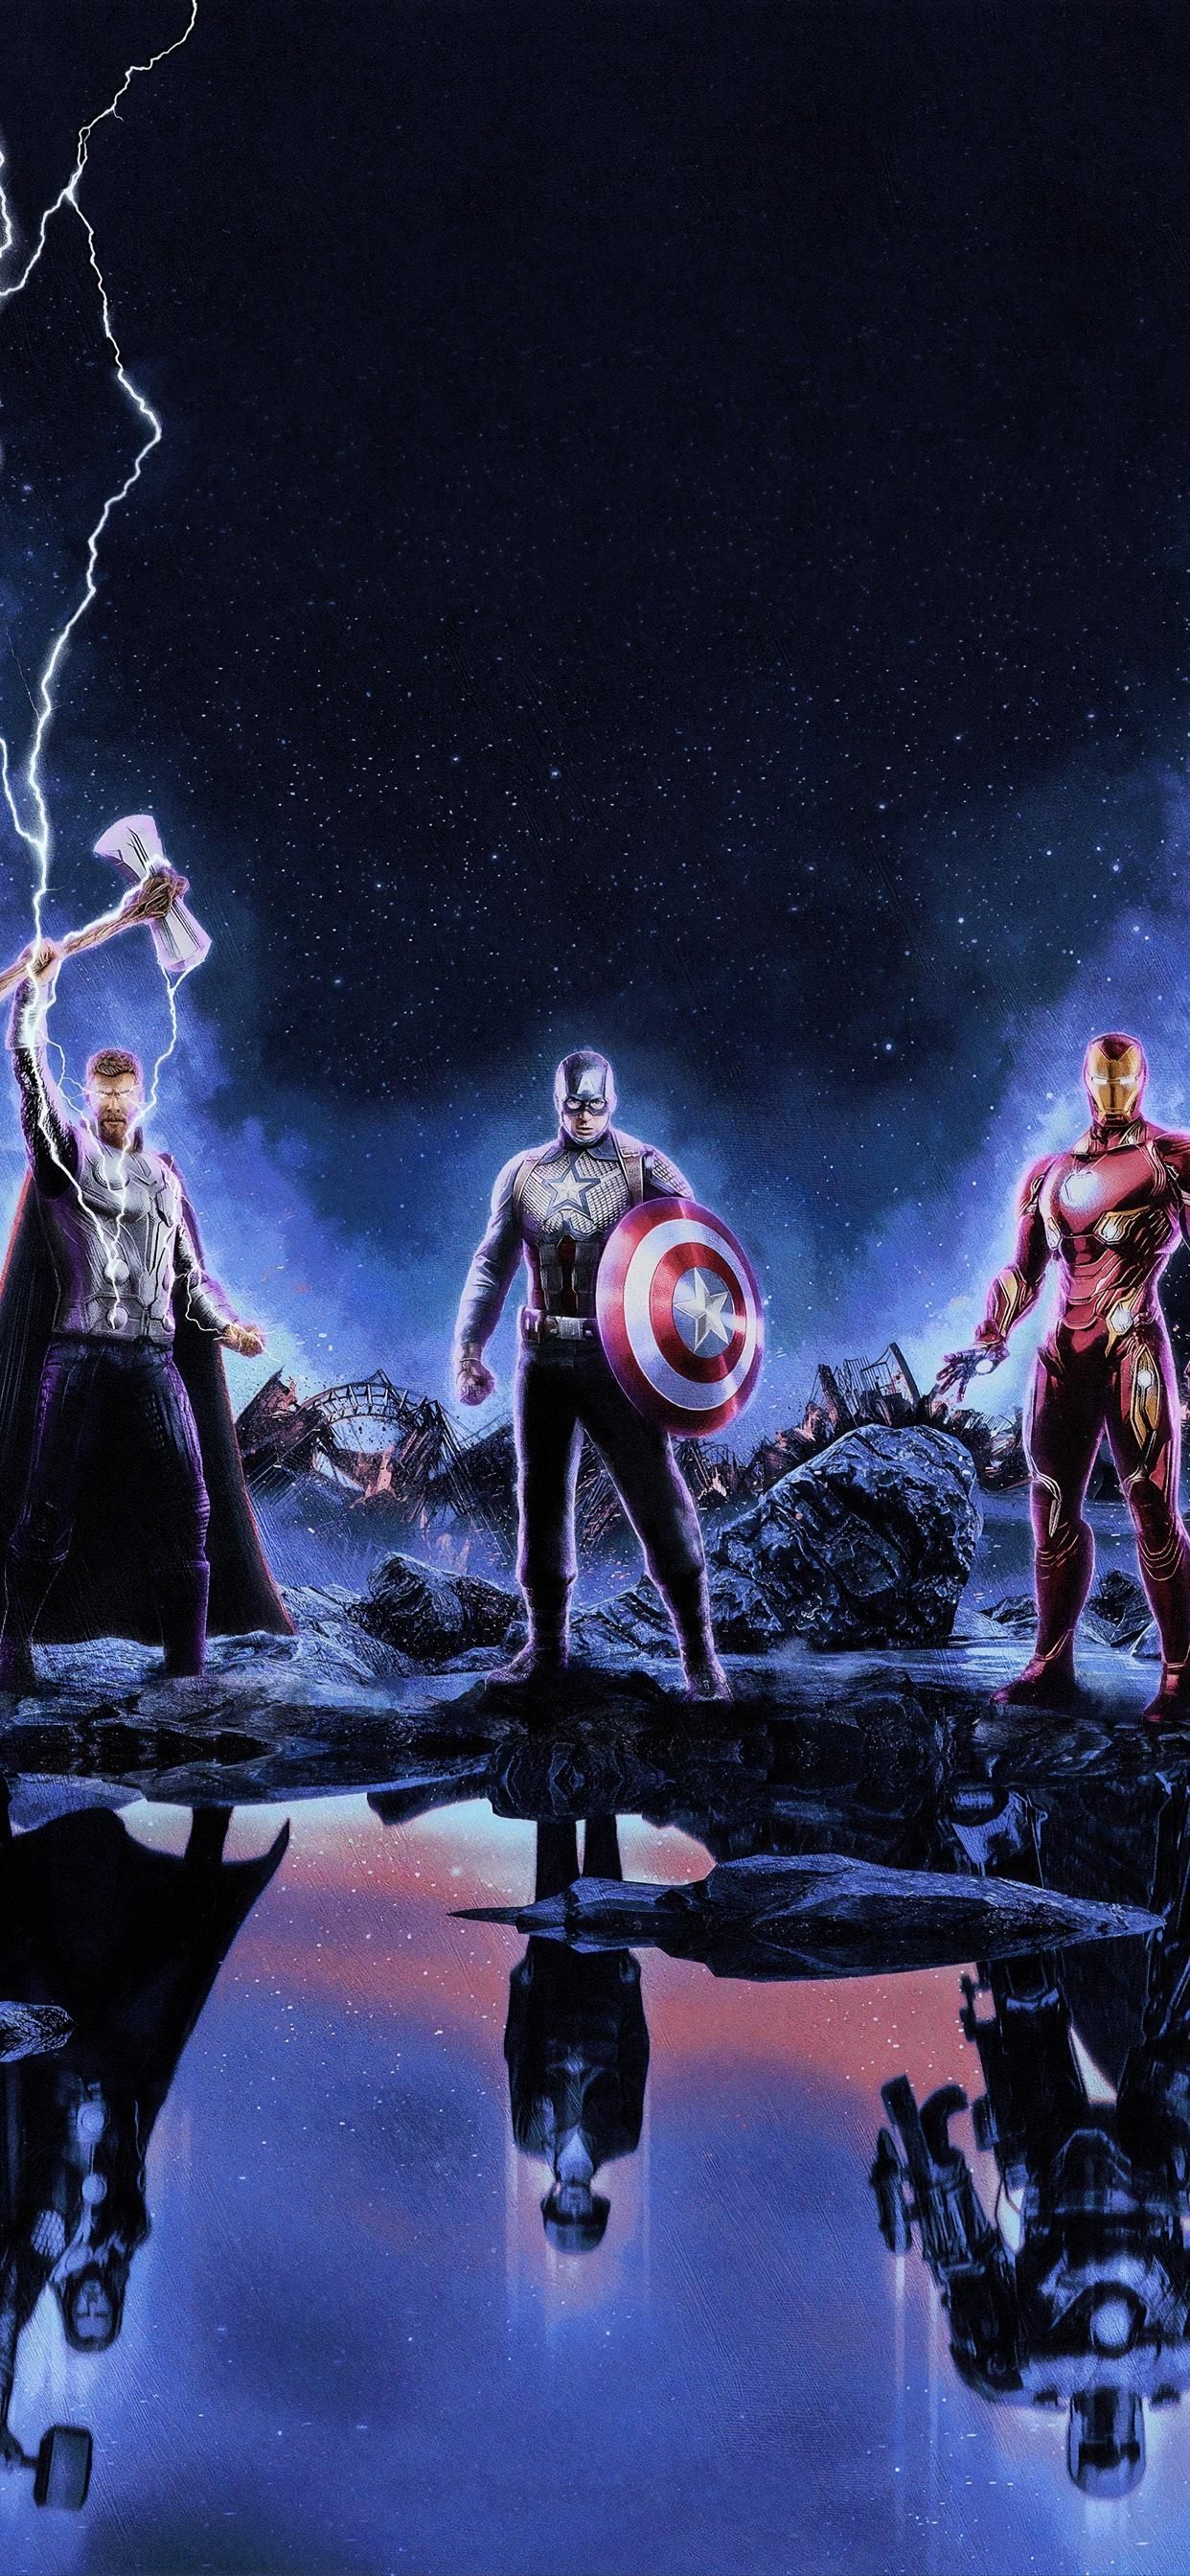 Avengers Endgame Wallpaper 4k iPhoneD Wallpaper, DWallpapermarvel #Avengers #Endgame. in 2020 d